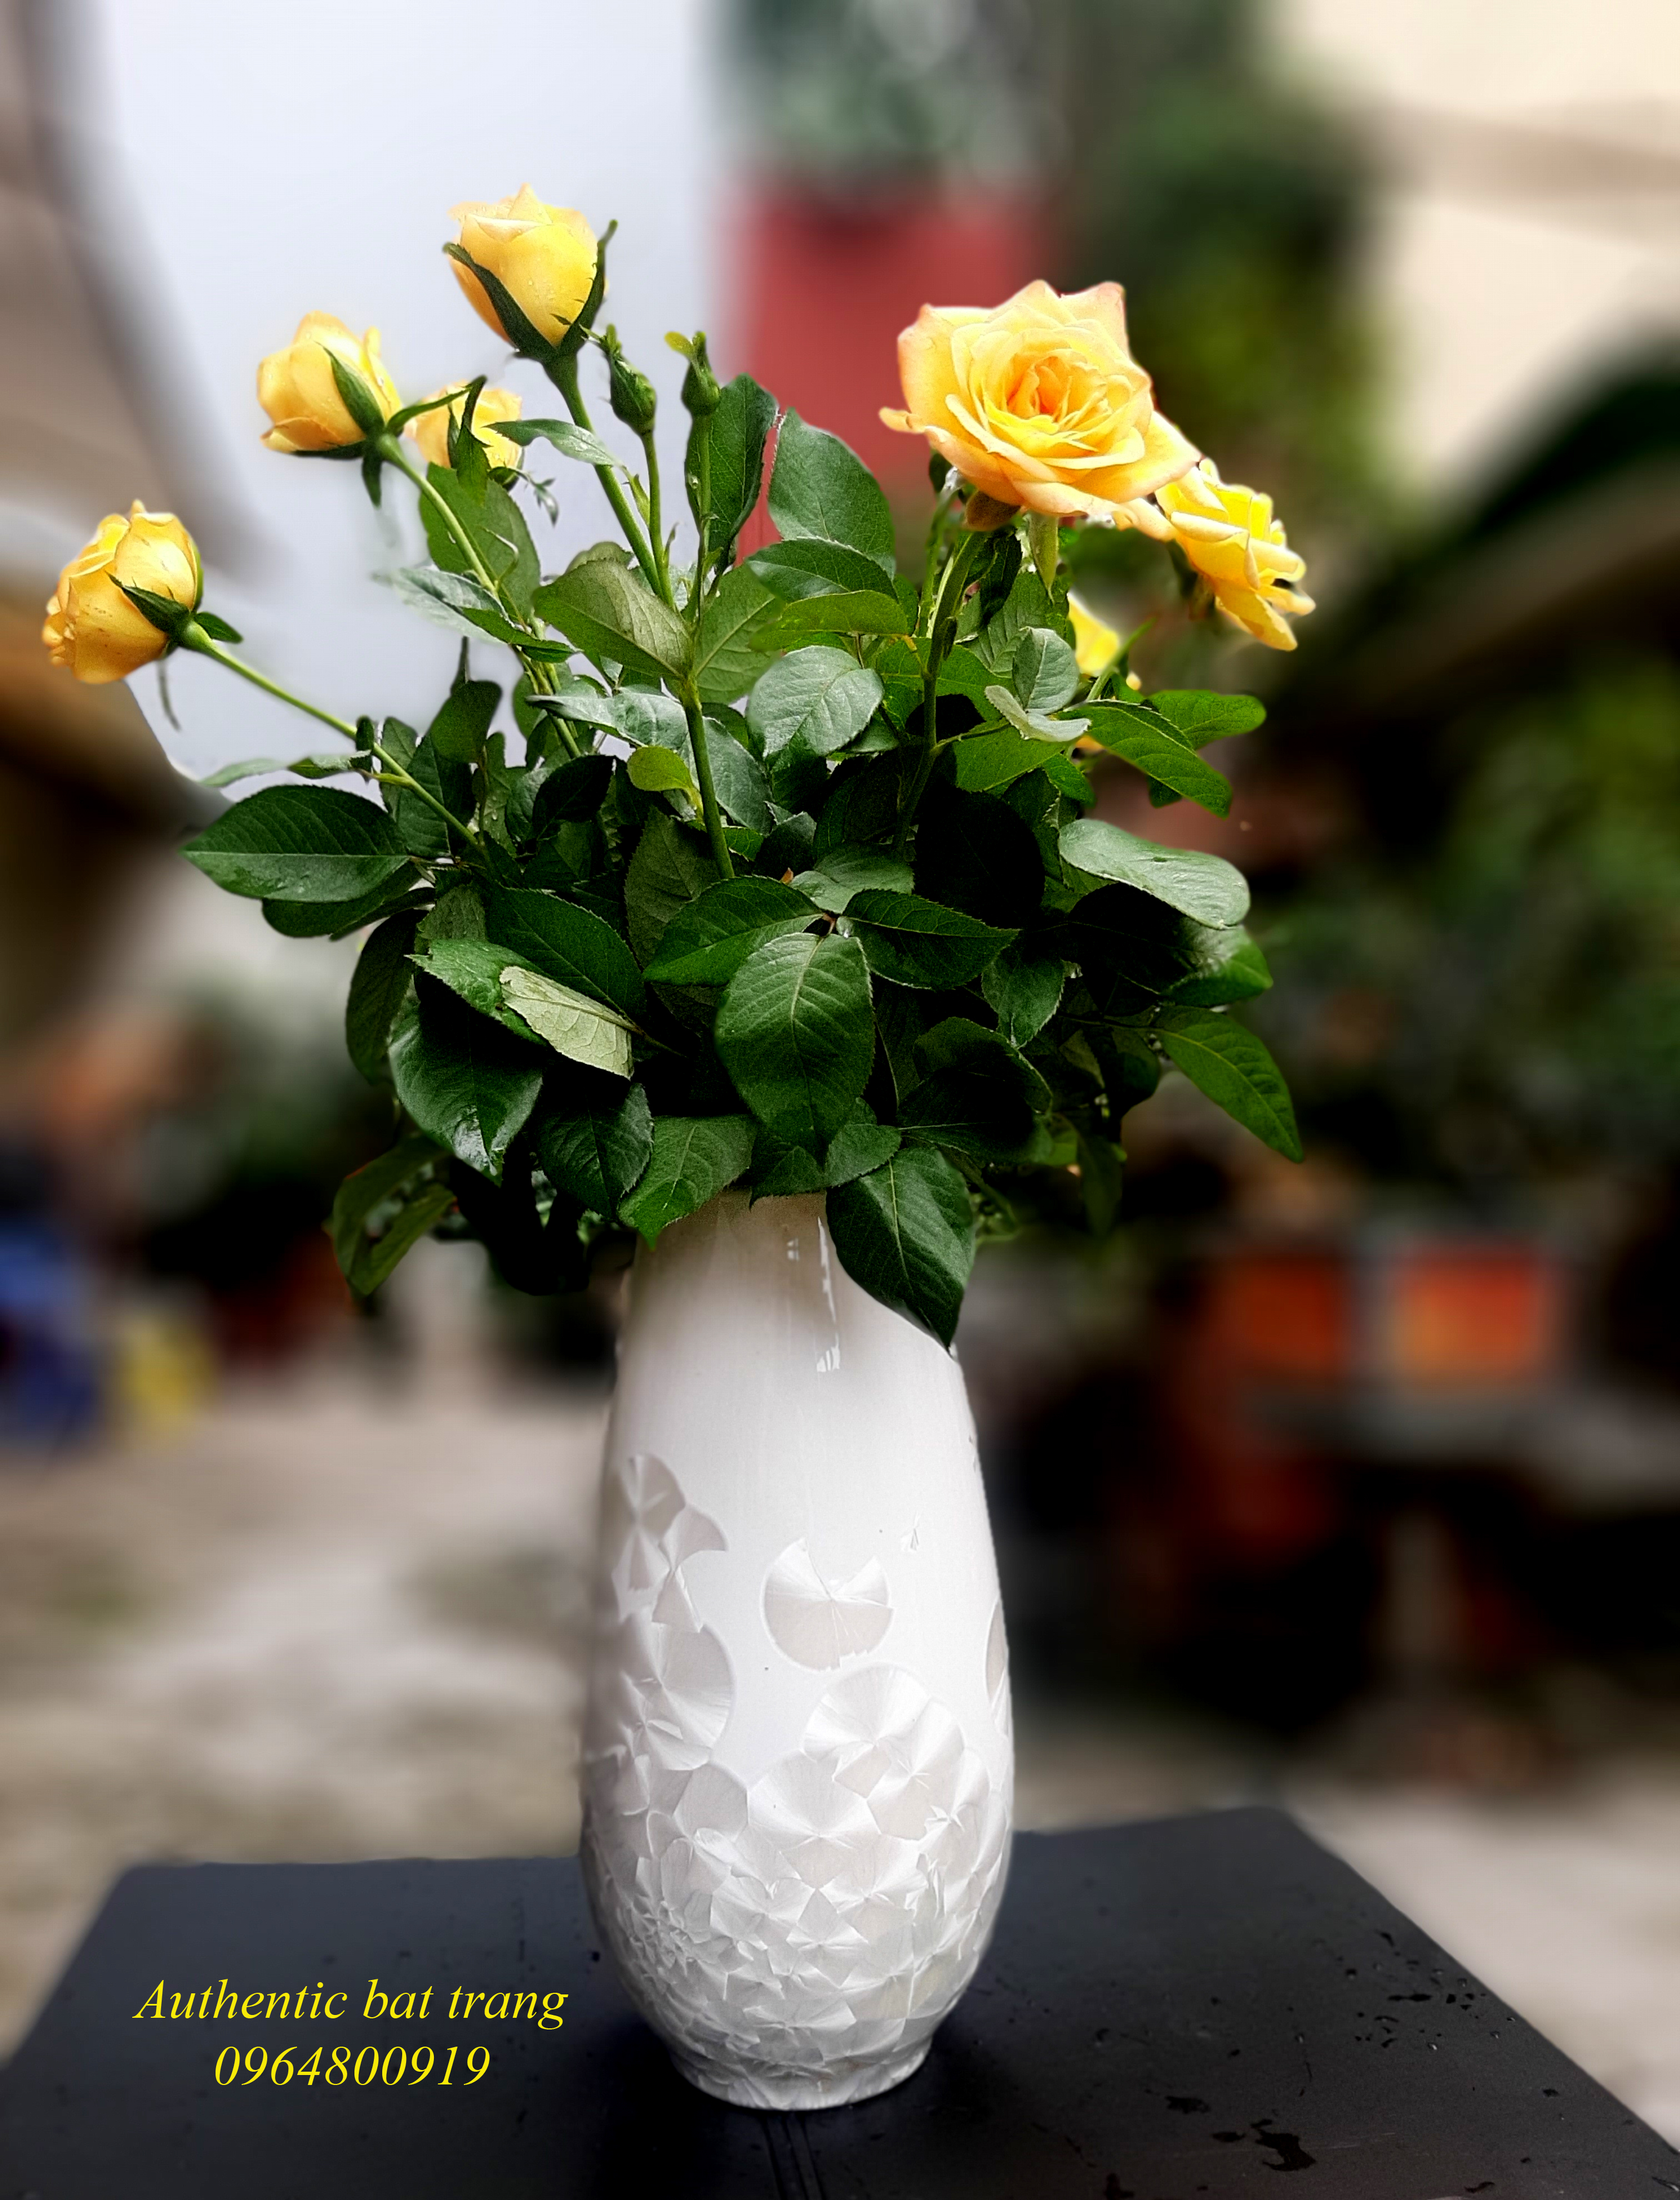  ceramics vase- bình cắm hoa size lớn trang trí phòng khách, phòng ăn